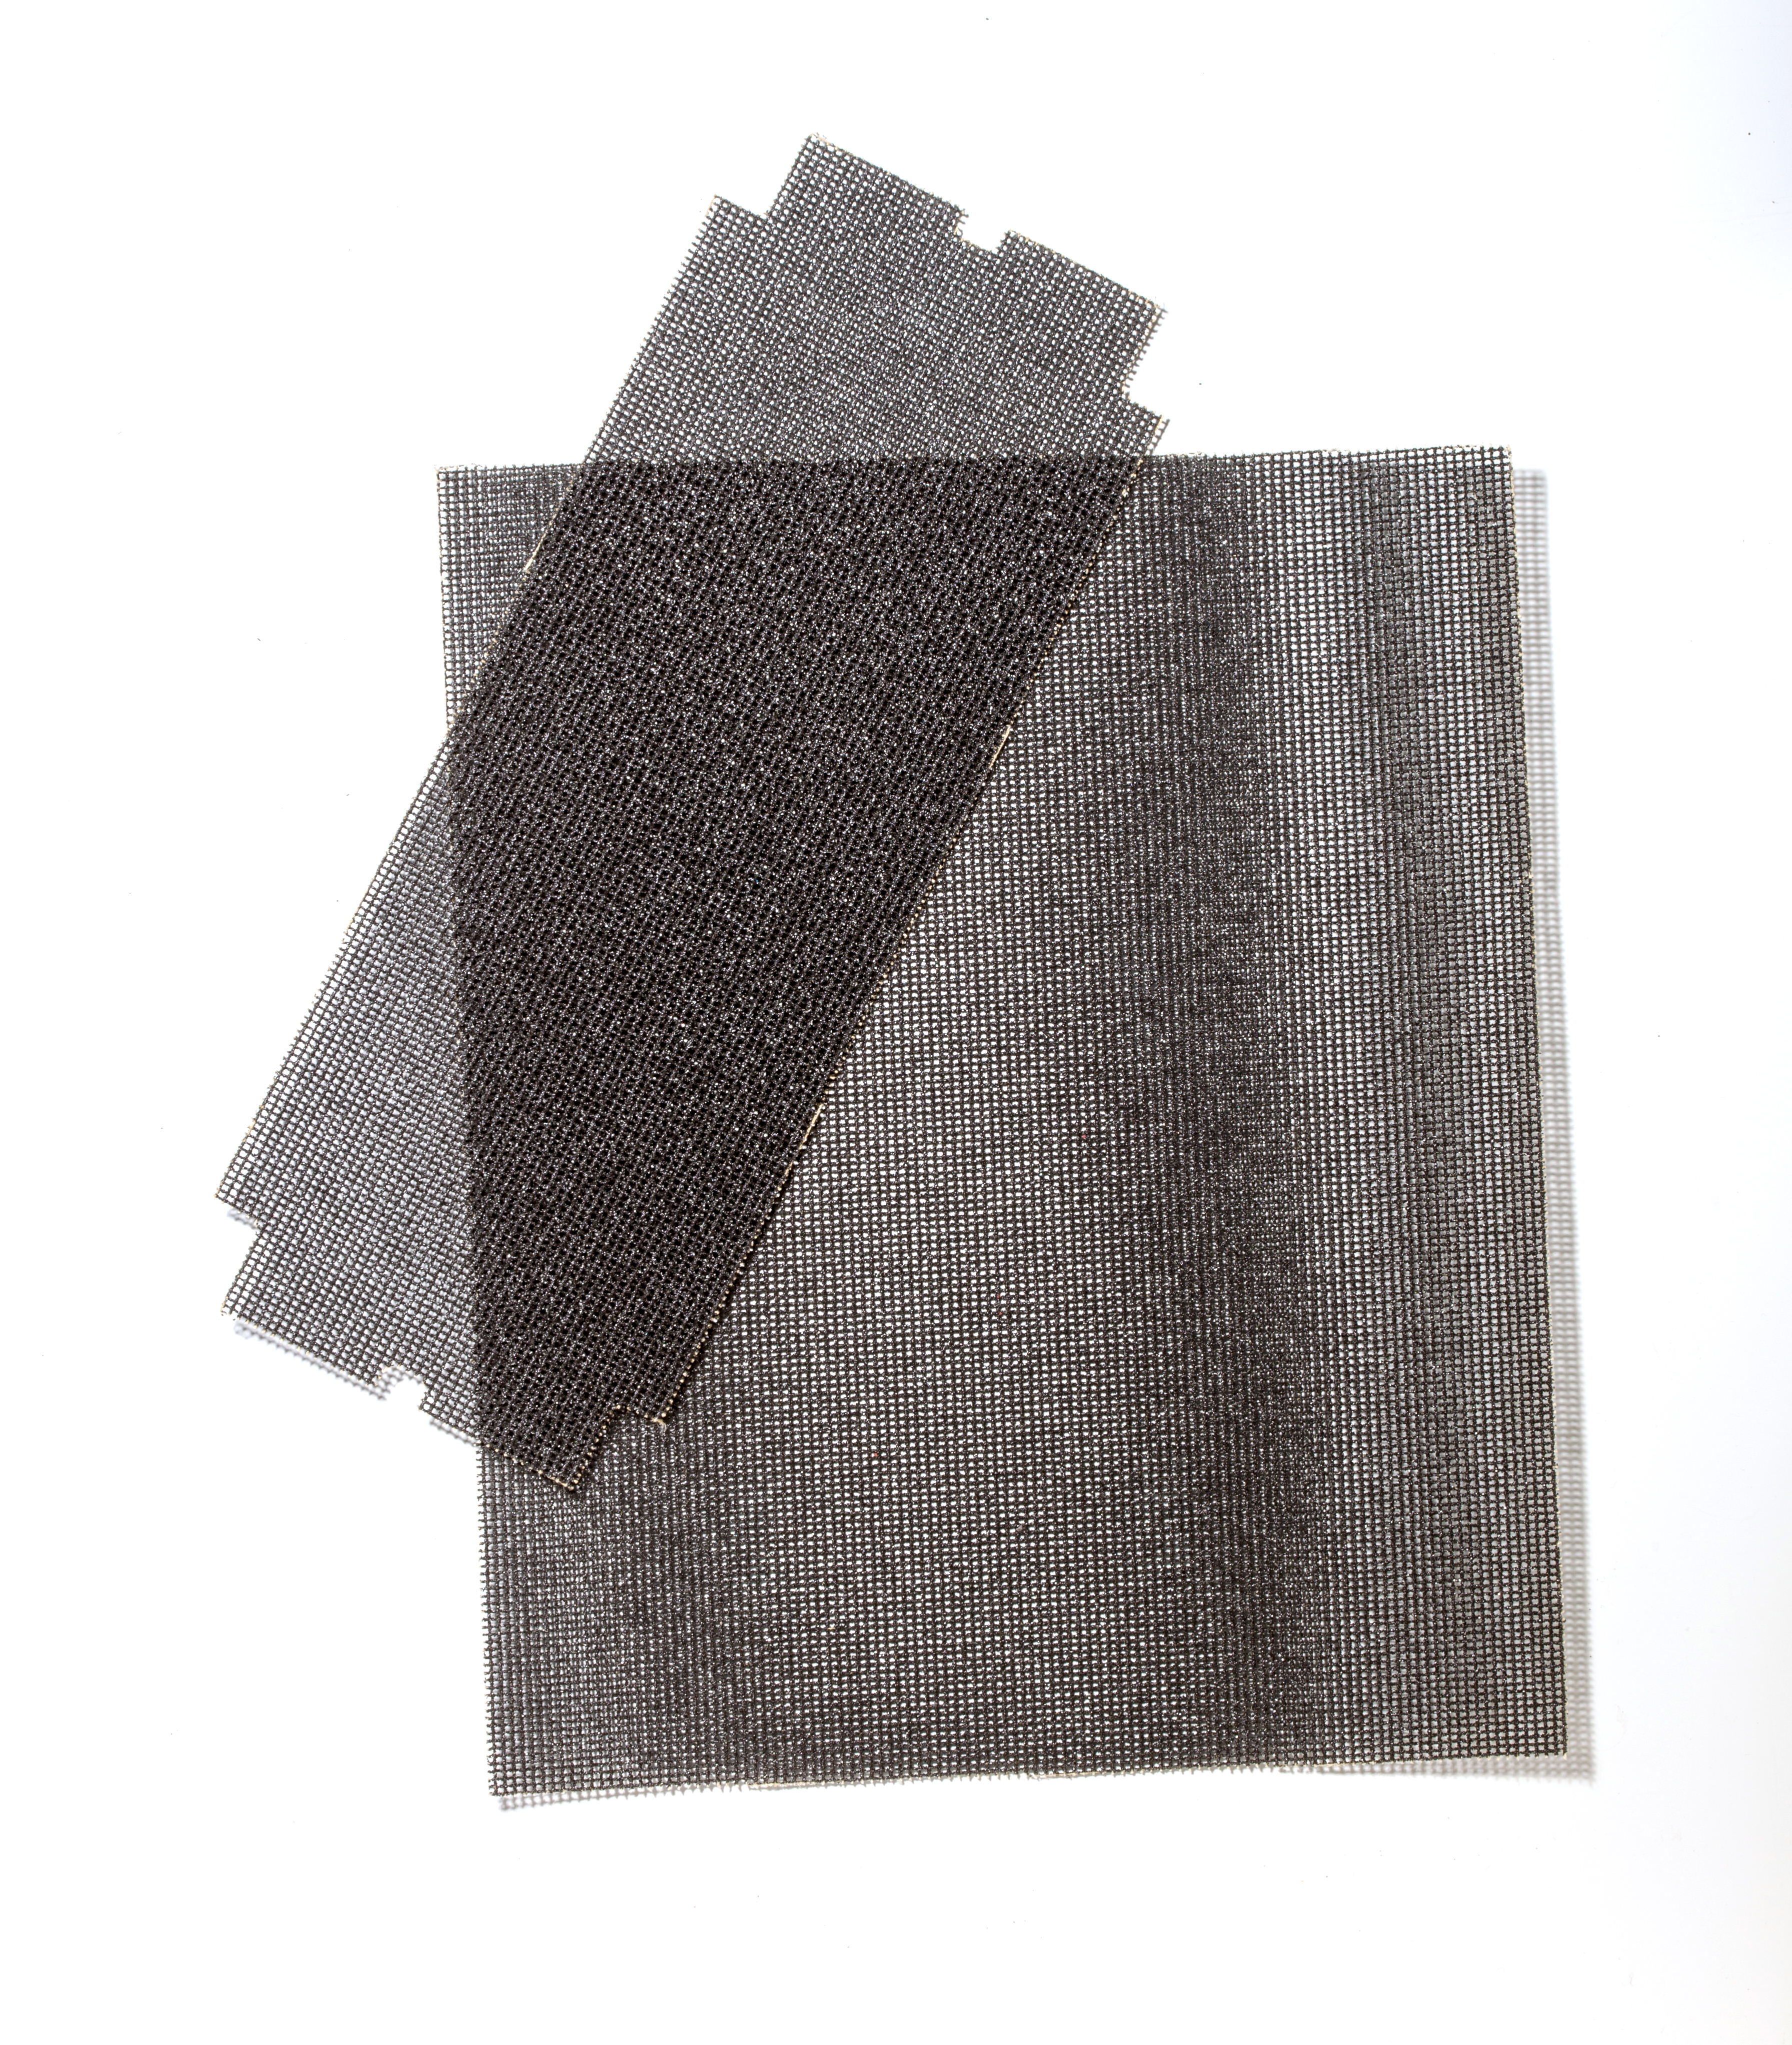 SAITSCREEN 4-3/16 X 11 80X - Sandpaper Sheets